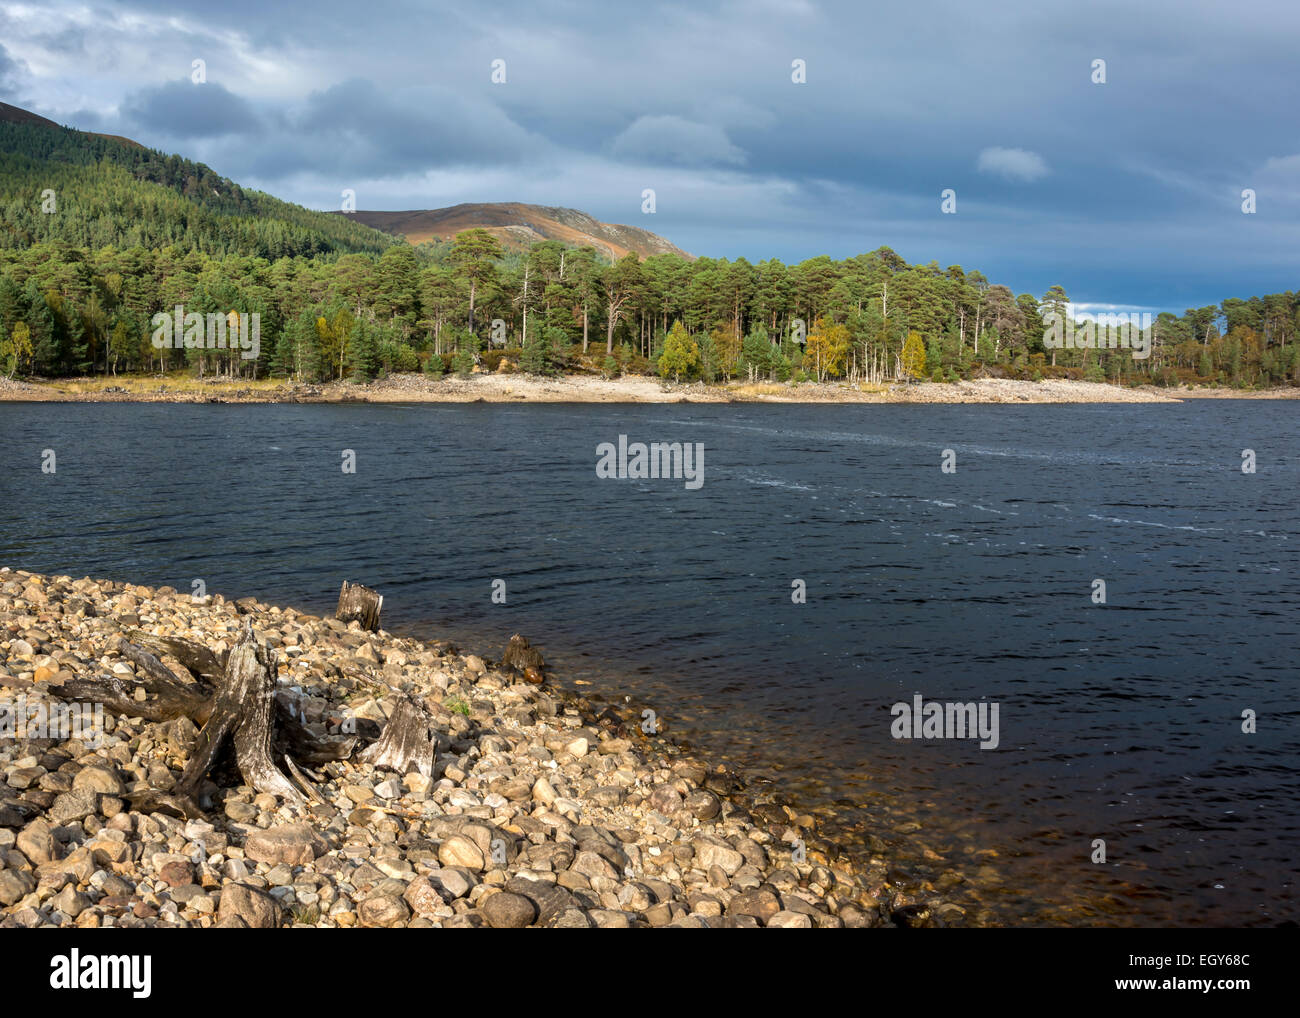 Glen Affric, Scotland, United Kingdom Stock Photo